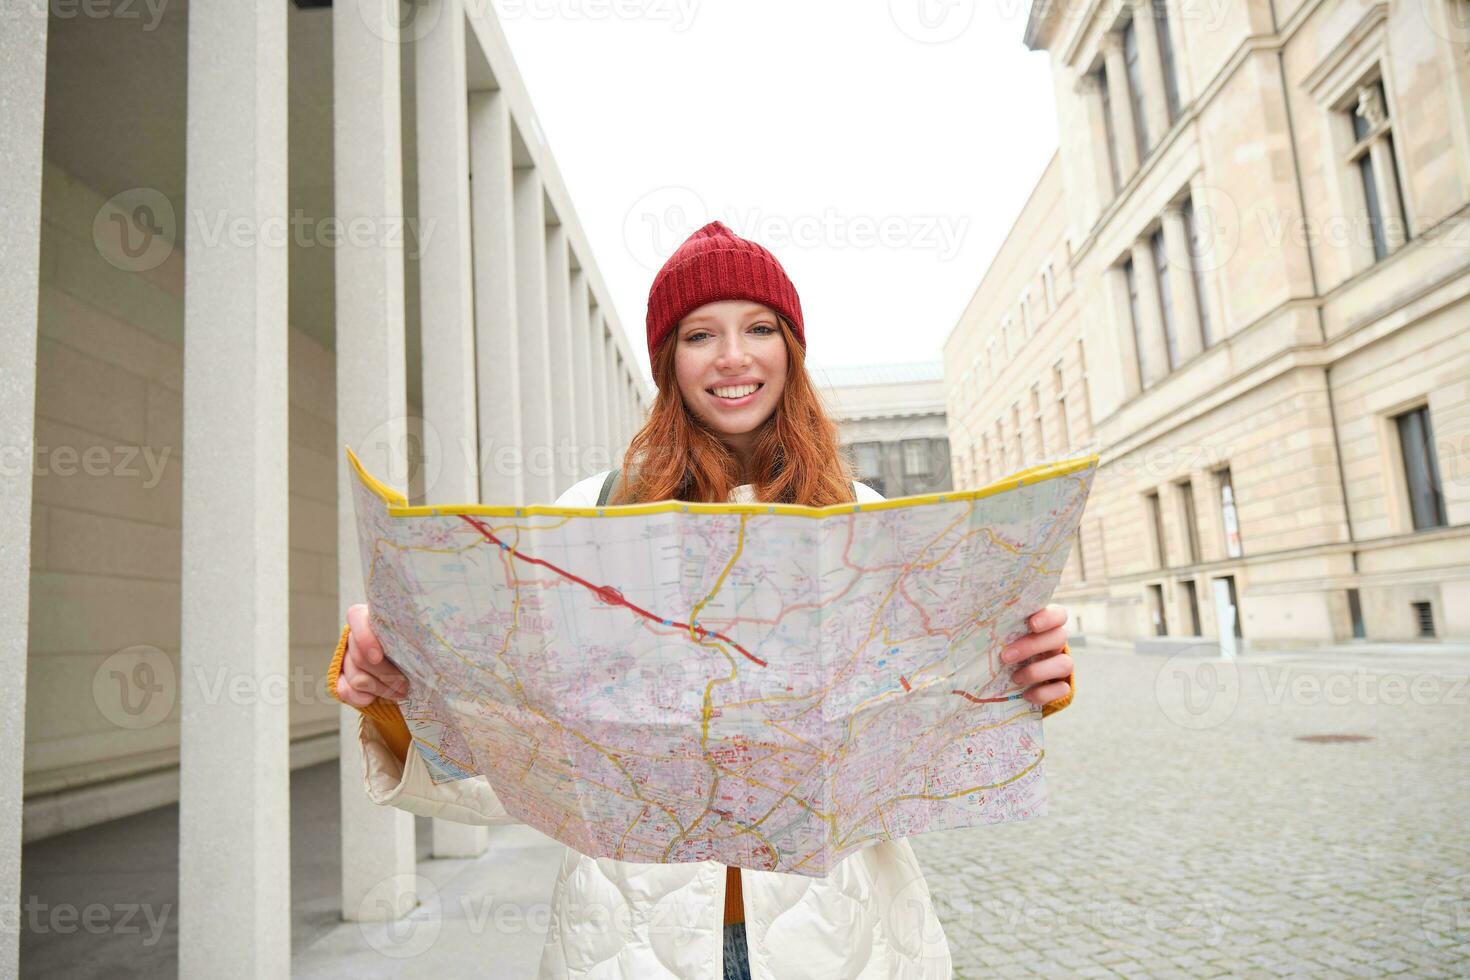 bellissimo testa Rossa donna, turista con città carta geografica, esplora giro turistico storico punto di riferimento, a piedi in giro vecchio cittadina, sorridente felicemente foto